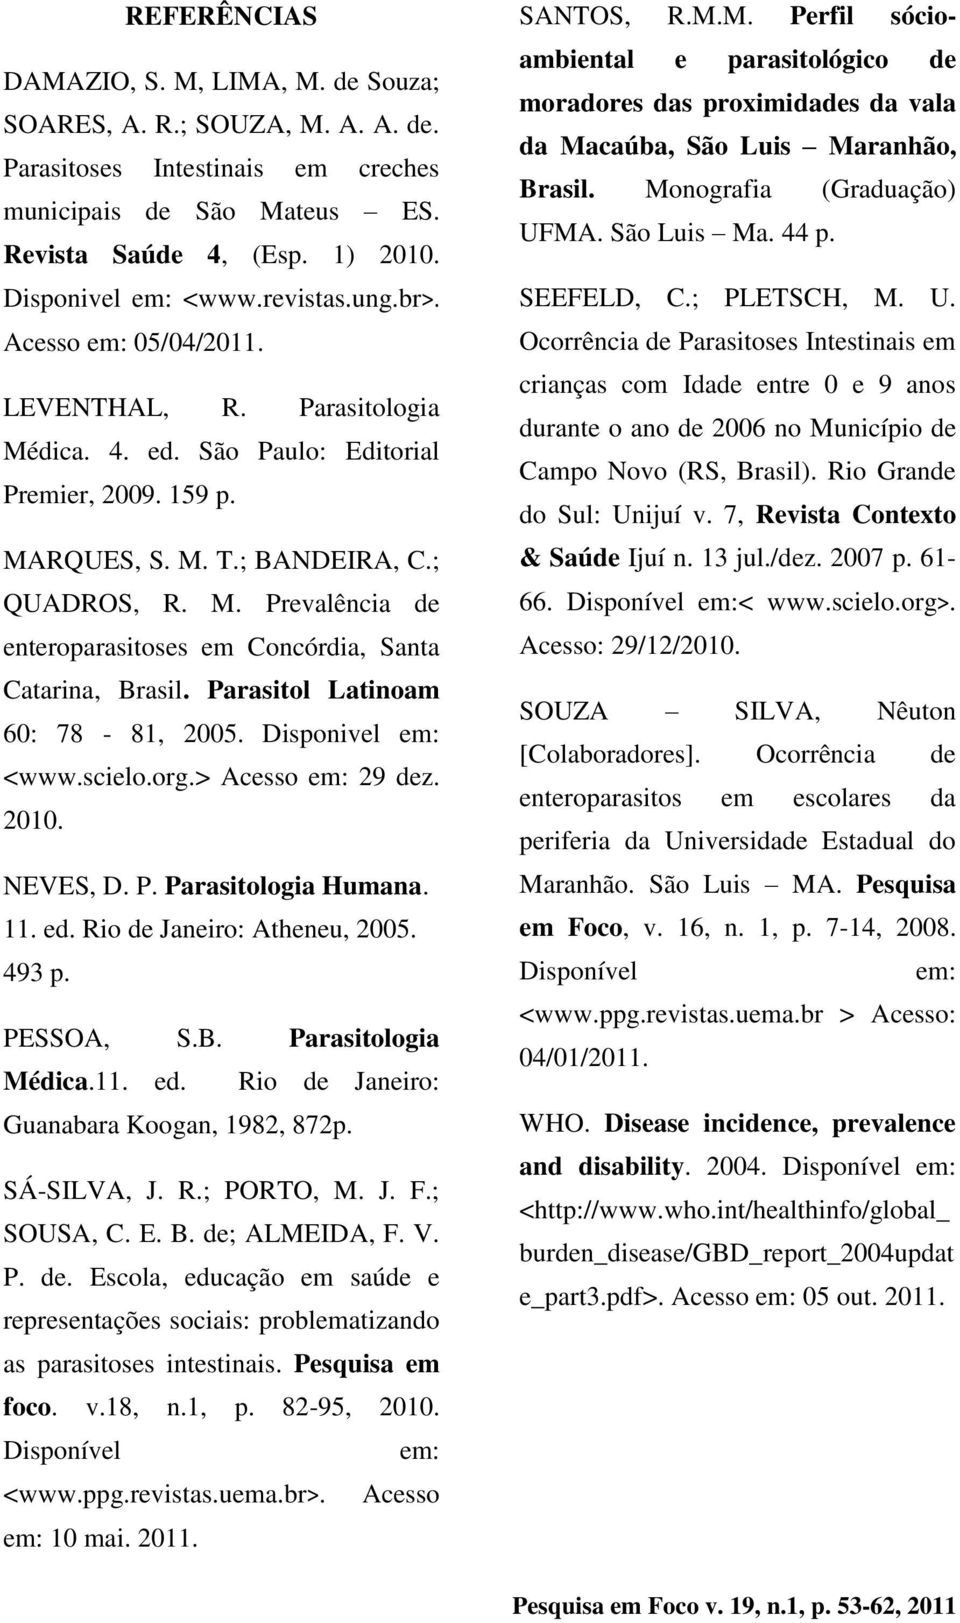 Parasitol Latinoam 60: 78-81, 2005. Disponivel em: <www.scielo.org.> Acesso em: 29 dez. 2010. NEVES, D. P. Parasitologia Humana. 11. ed. Rio de Janeiro: Atheneu, 2005. 493 p. PESSOA, S.B.